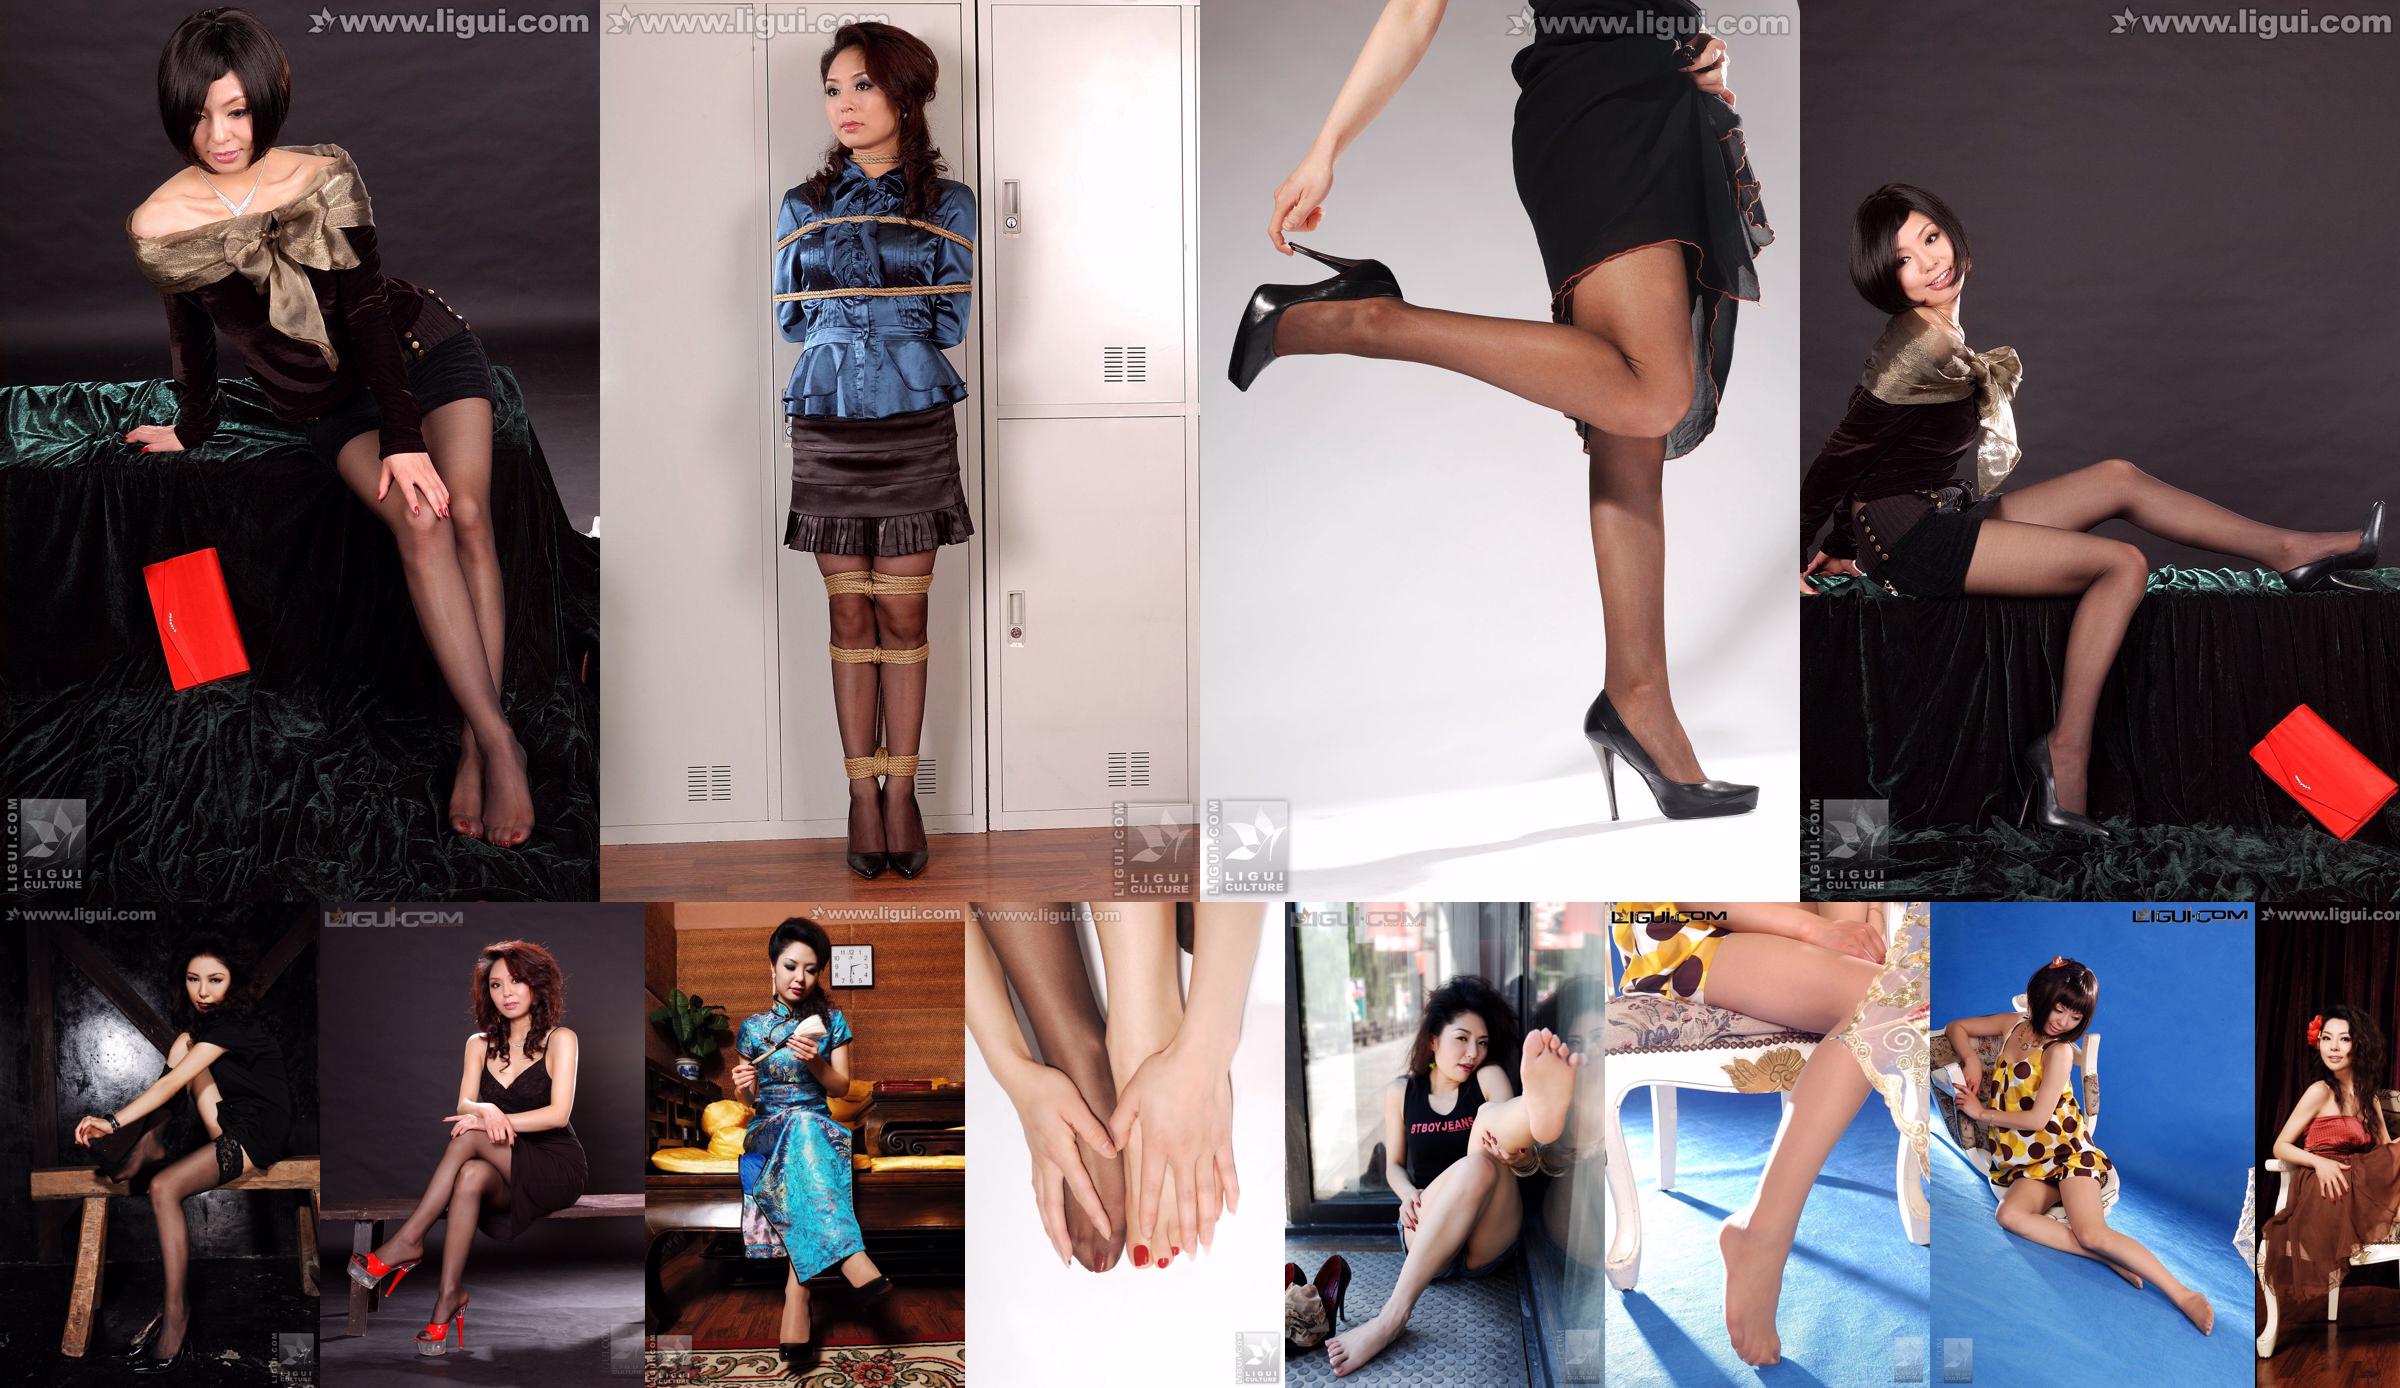 Người mẫu Bing Qing "Red Hot Mature Woman Bondage Collection" [Mitsuka 丽 柜 LiGui] Ảnh về tất và chân No.0a9b0a Trang 2